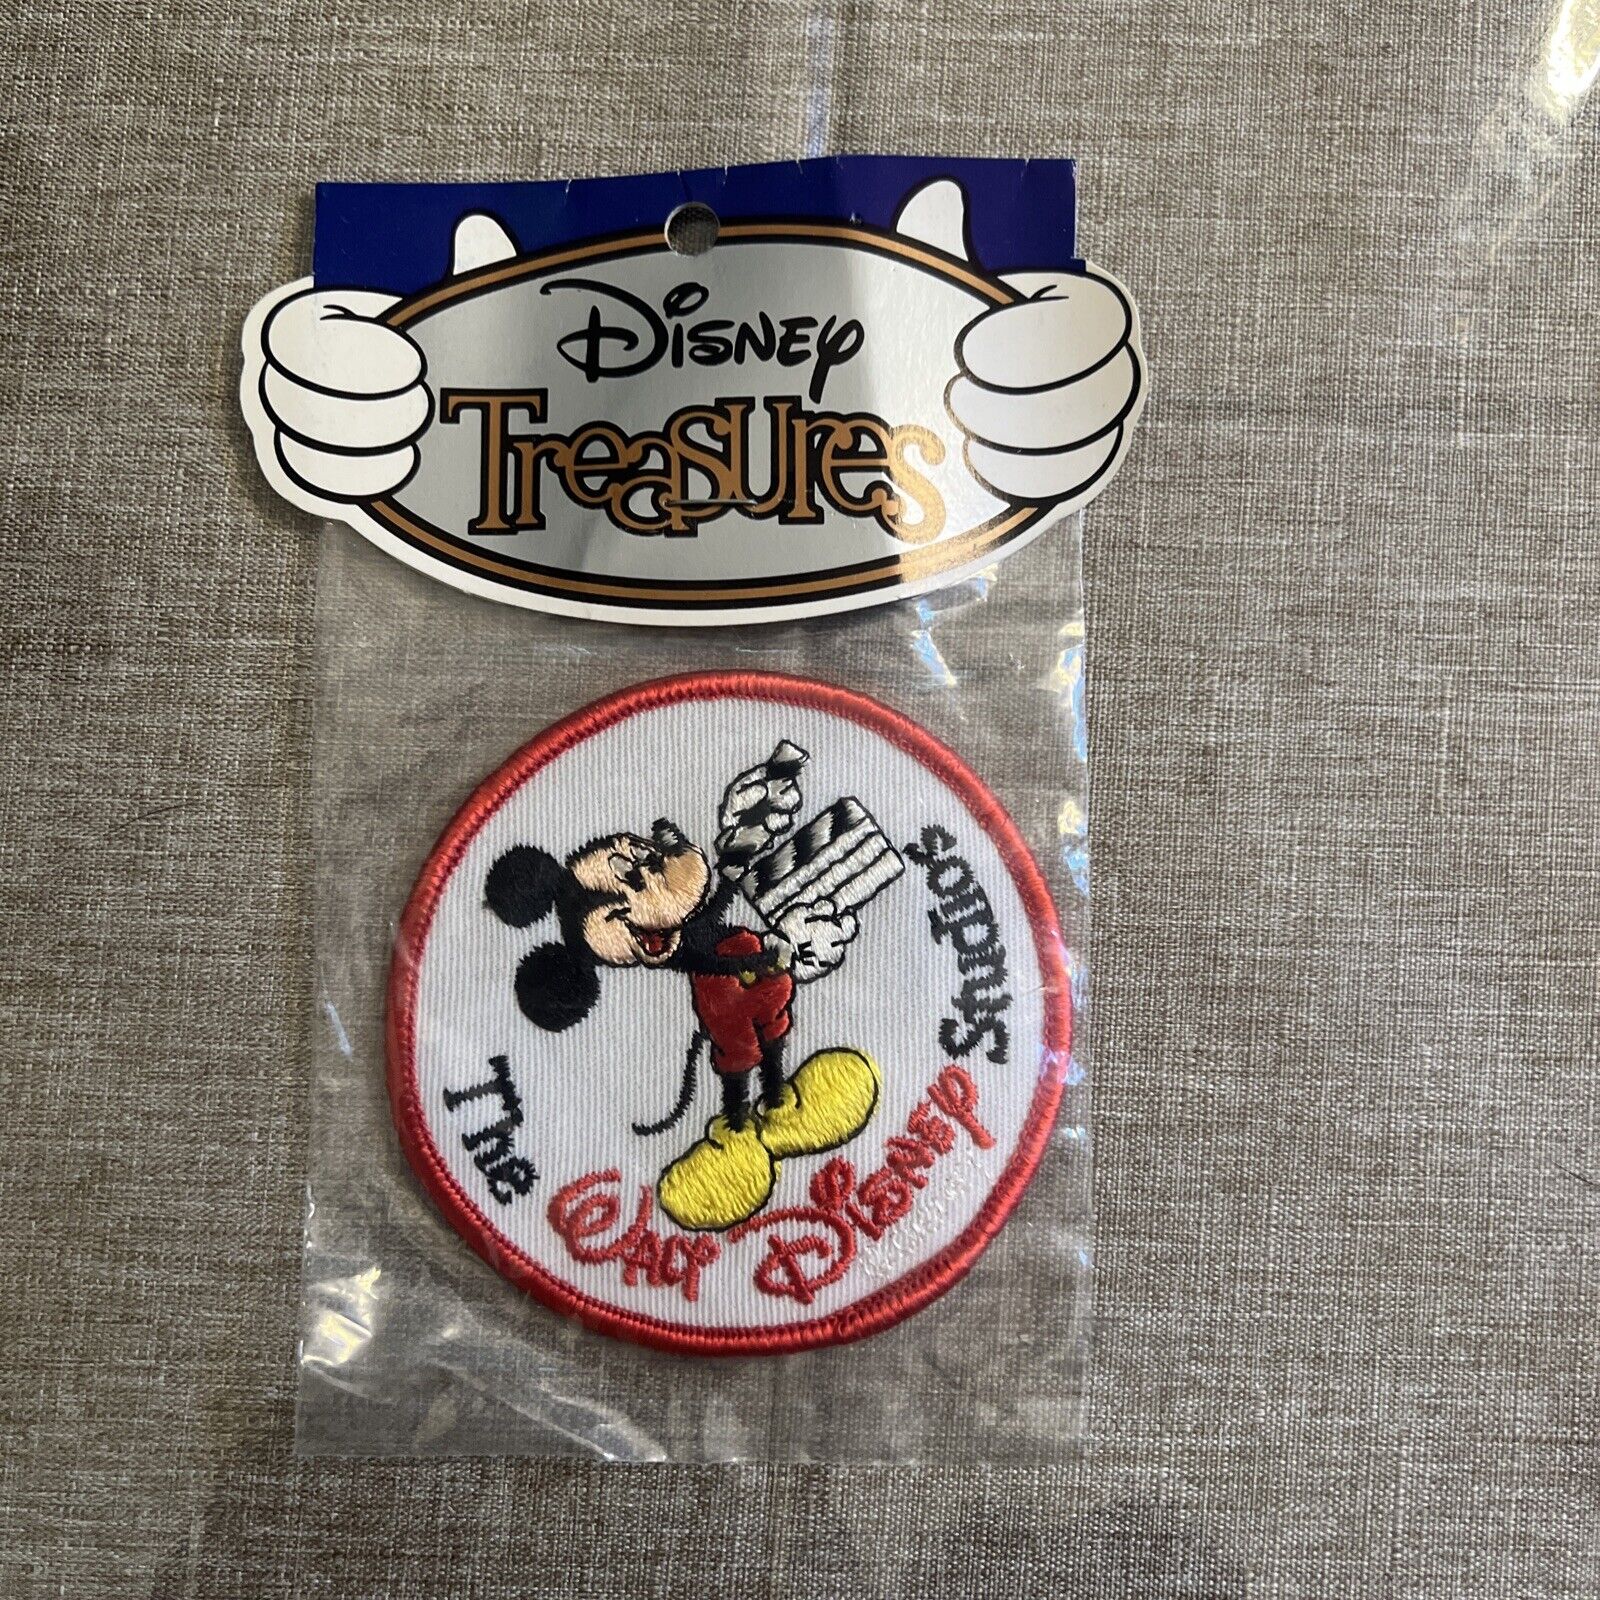 Vintage Disney Treasures The Walt Disney Sudios Mickey Mouse Patch 